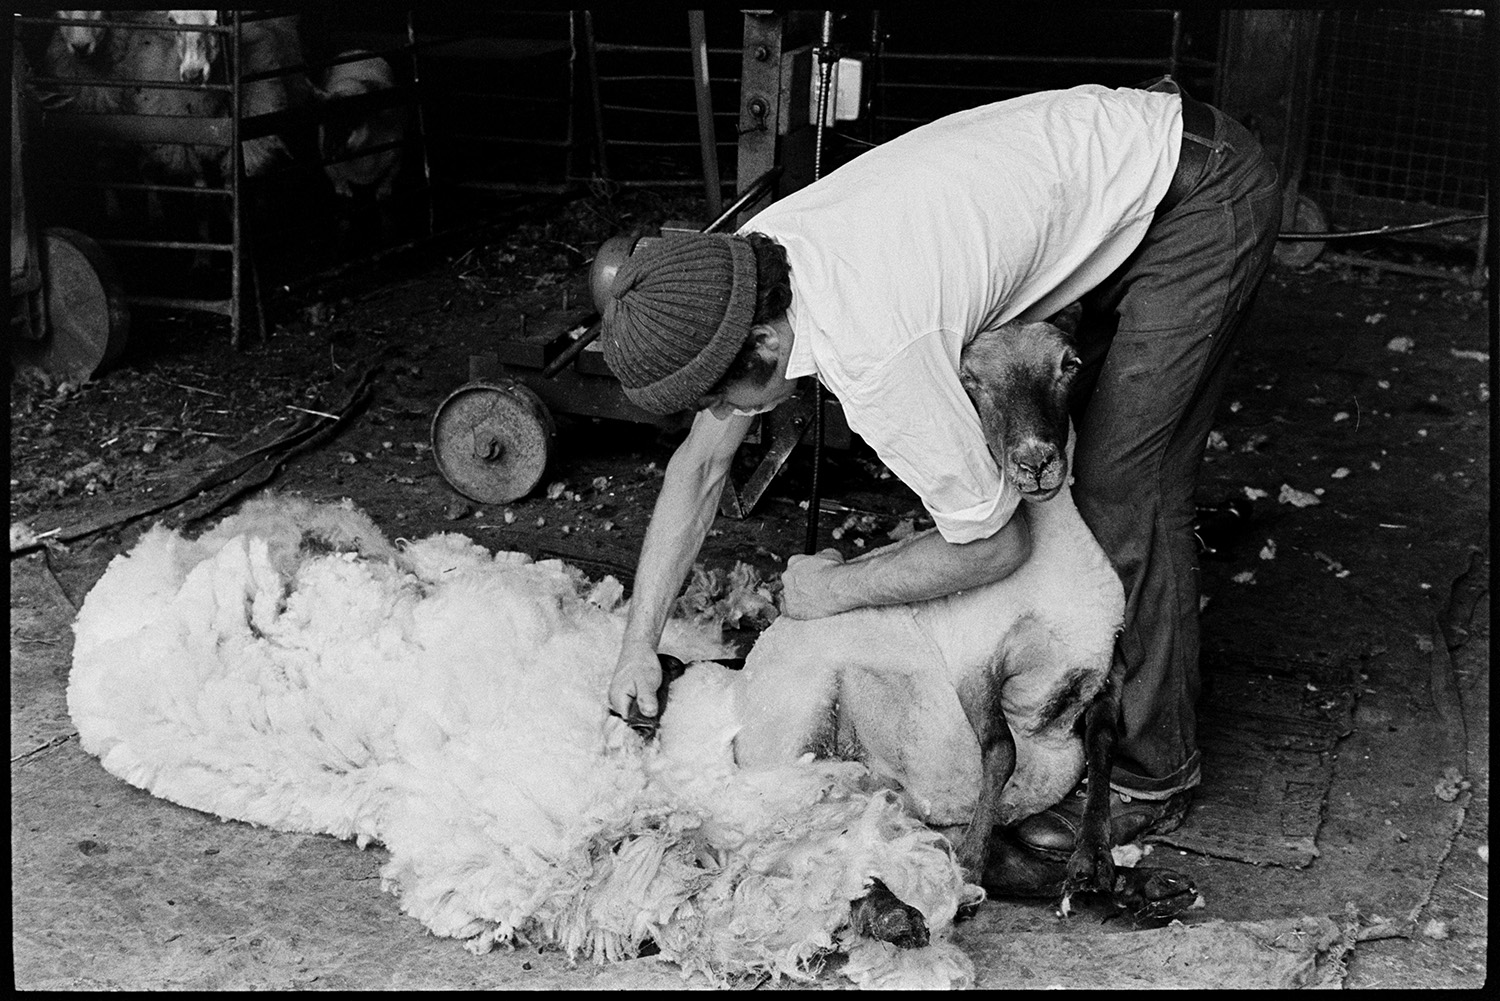 Shearing sheep. 
[David Ward shearing a sheep using a shearing machine in a barn at Parsonage, Iddesleigh.]